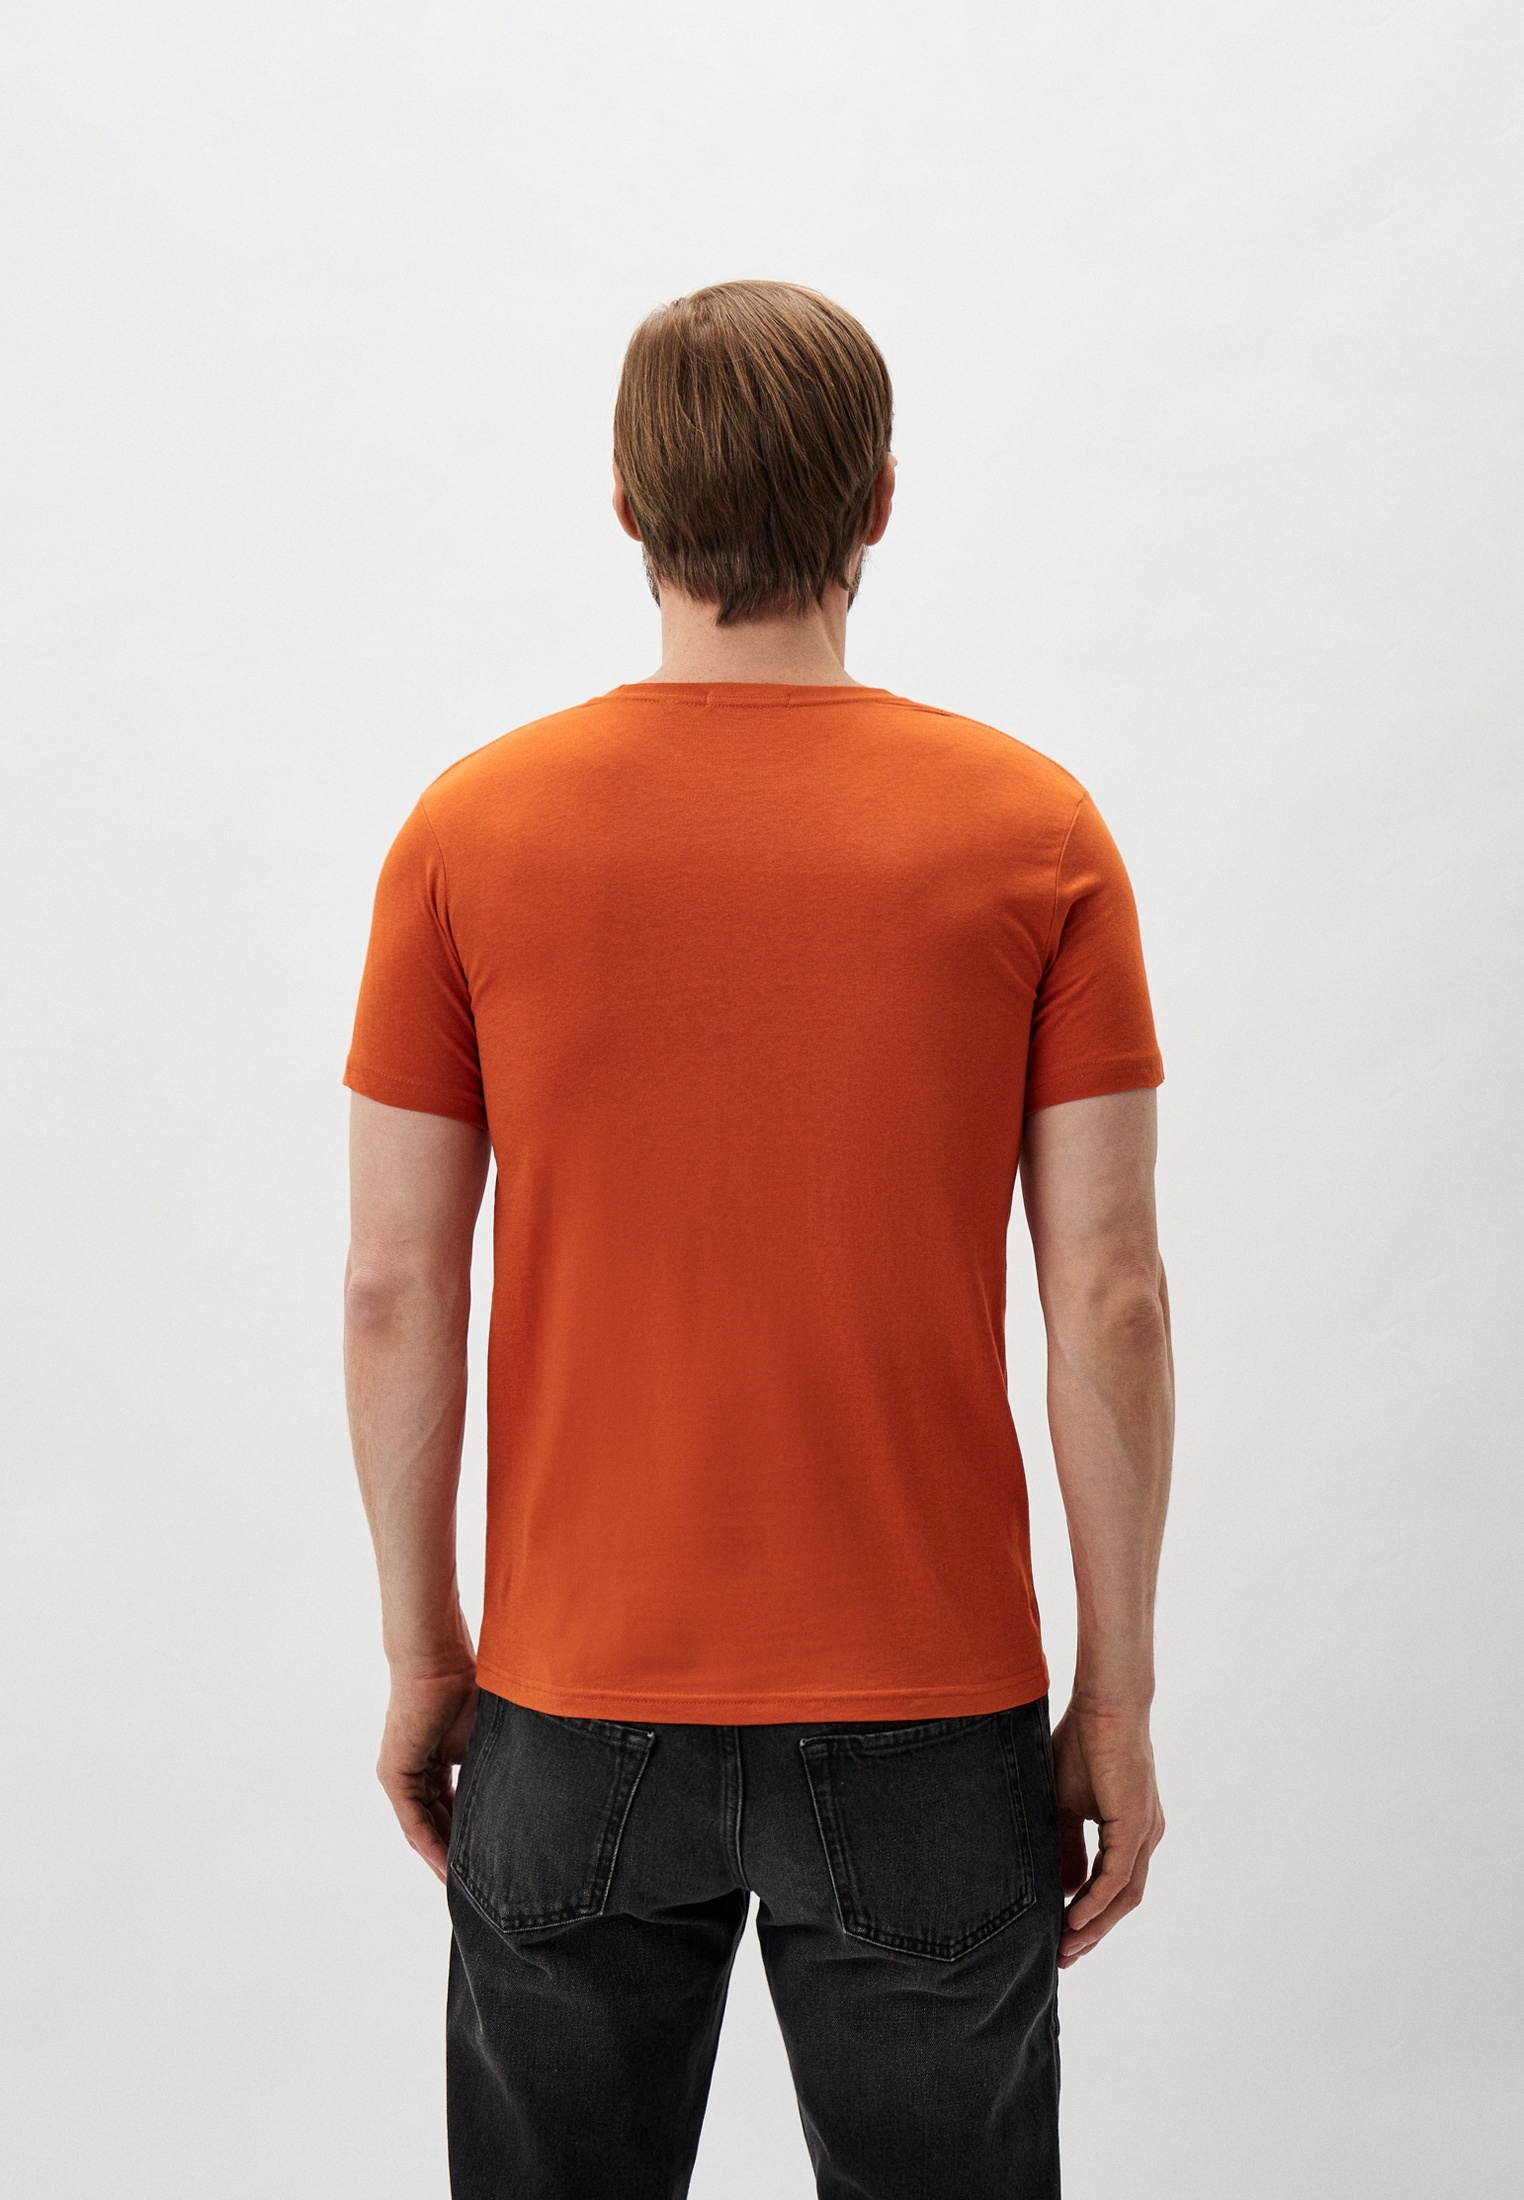 Мужская футболка Baldinini (Балдинини) B-OLM-M014: изображение 3